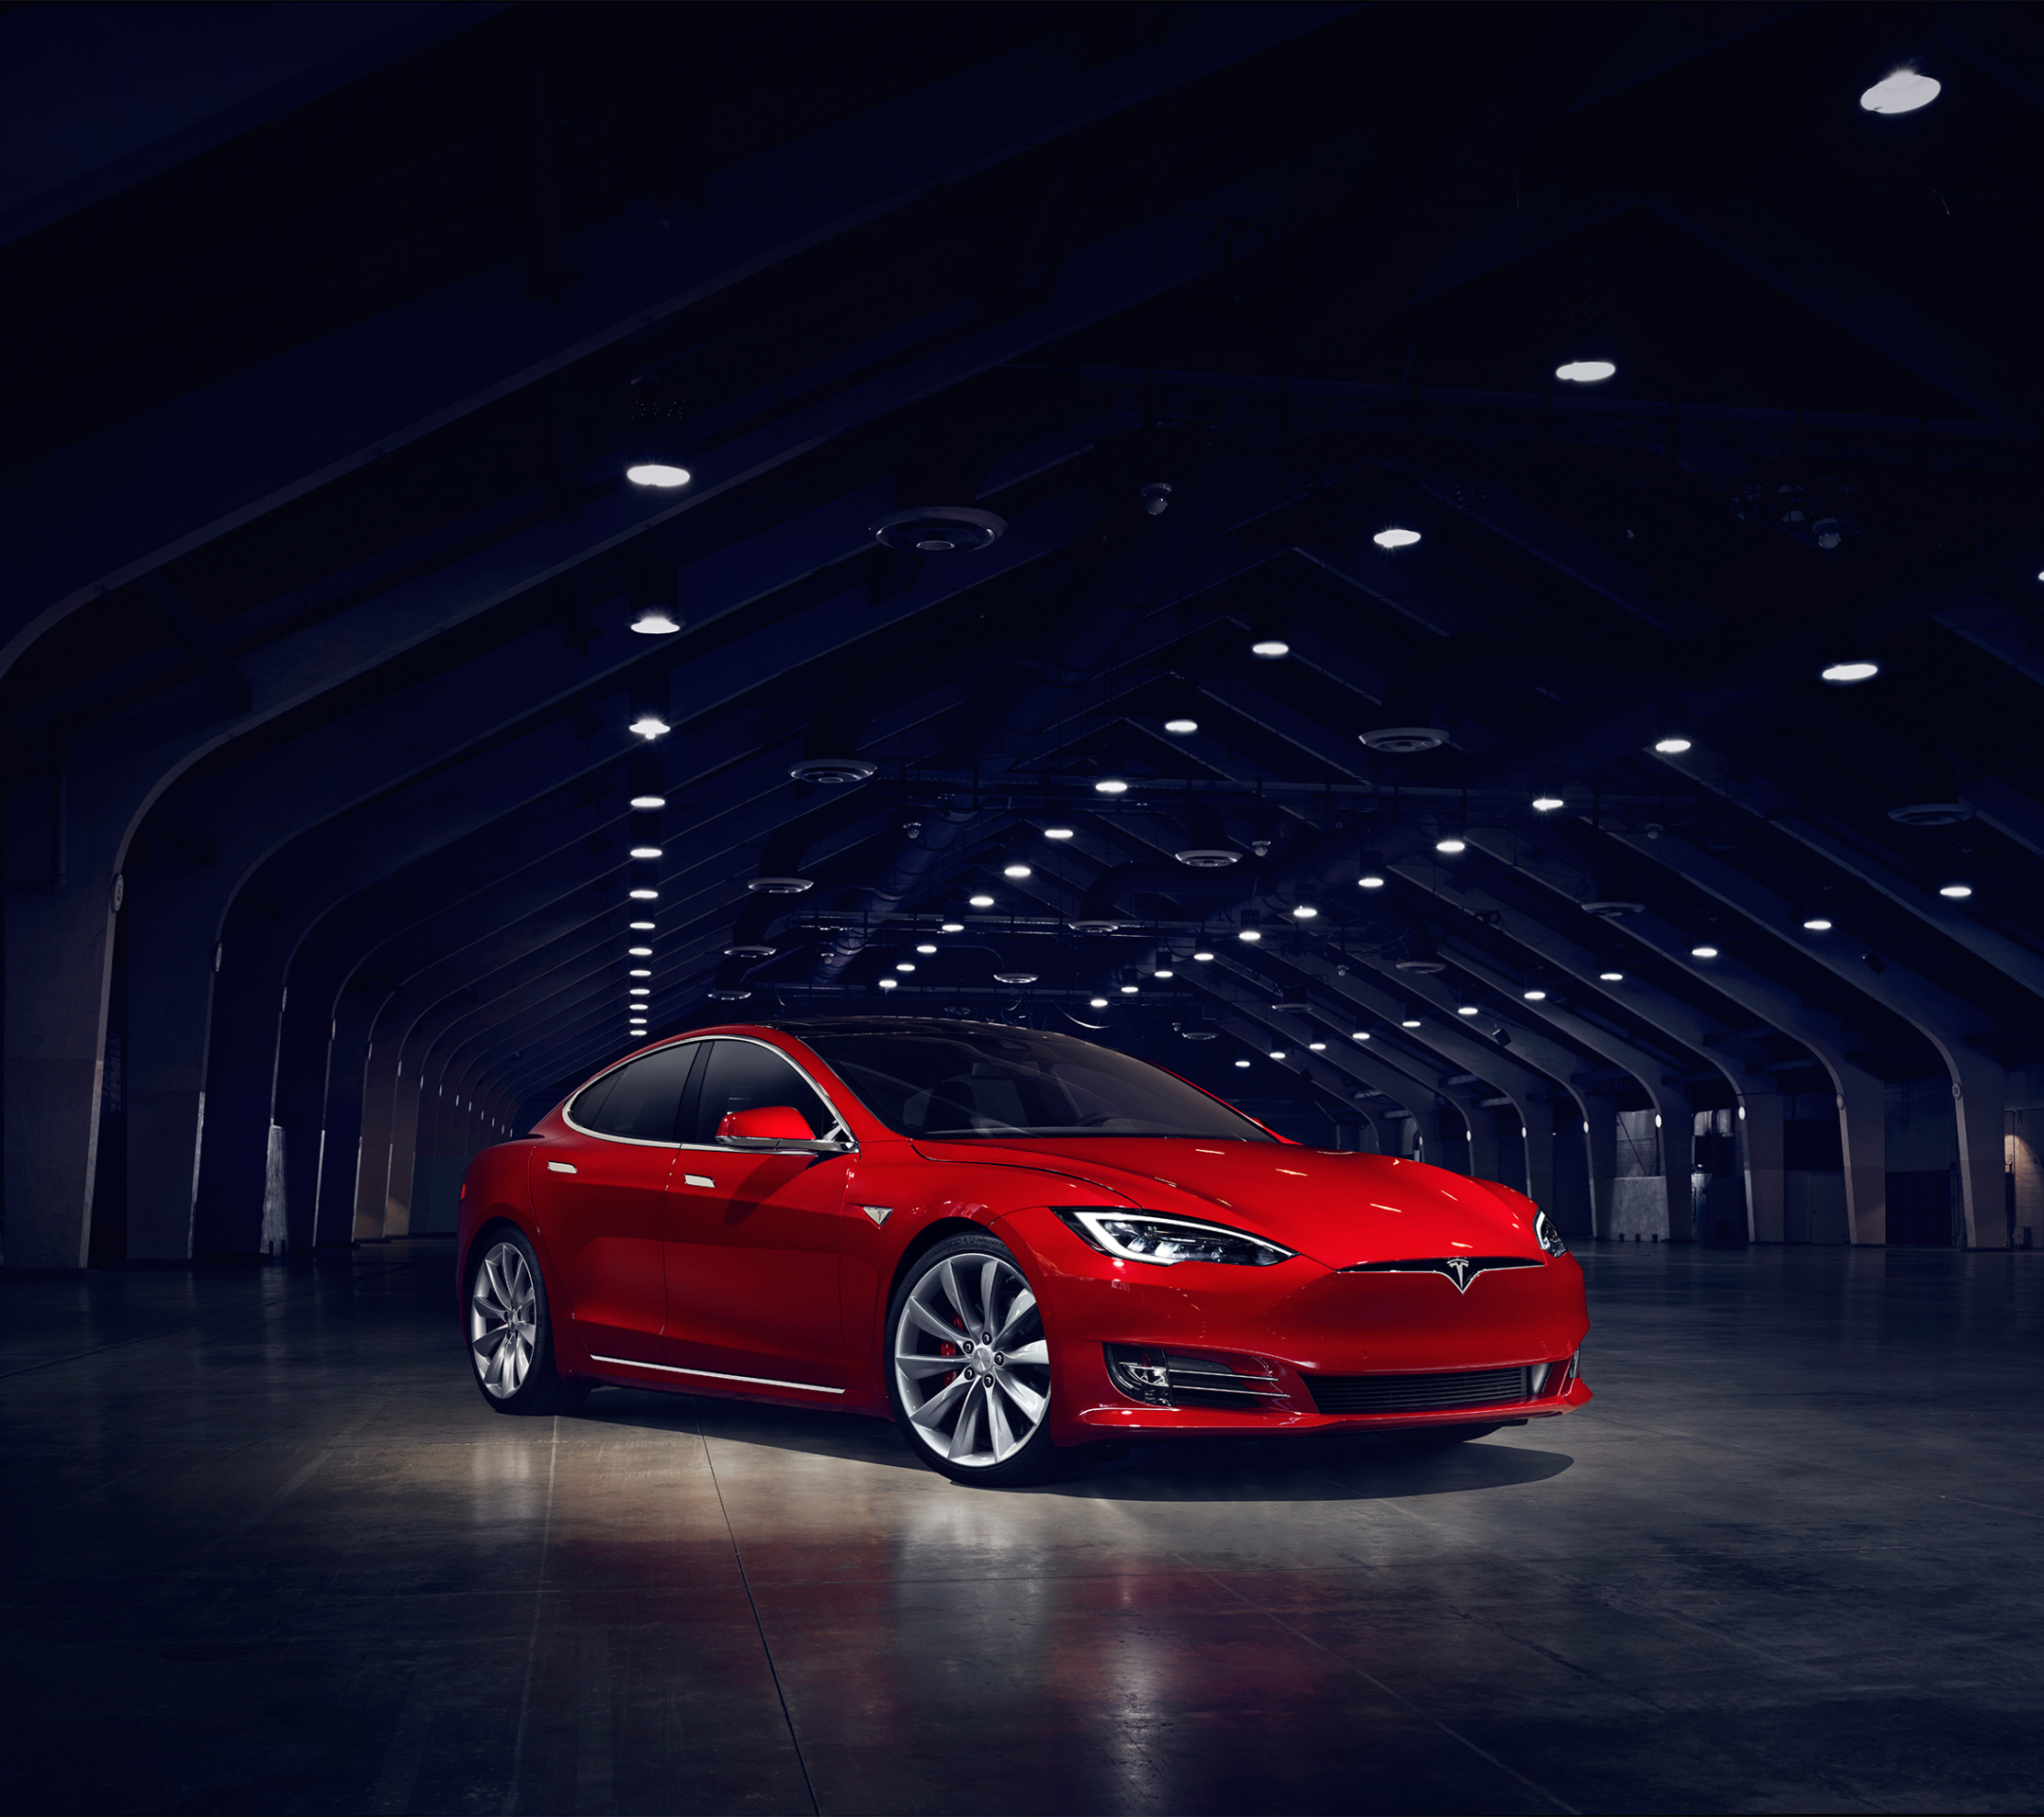 Download mobile wallpaper Car, Tesla Model S, Tesla Motors, Vehicle, Vehicles for free.